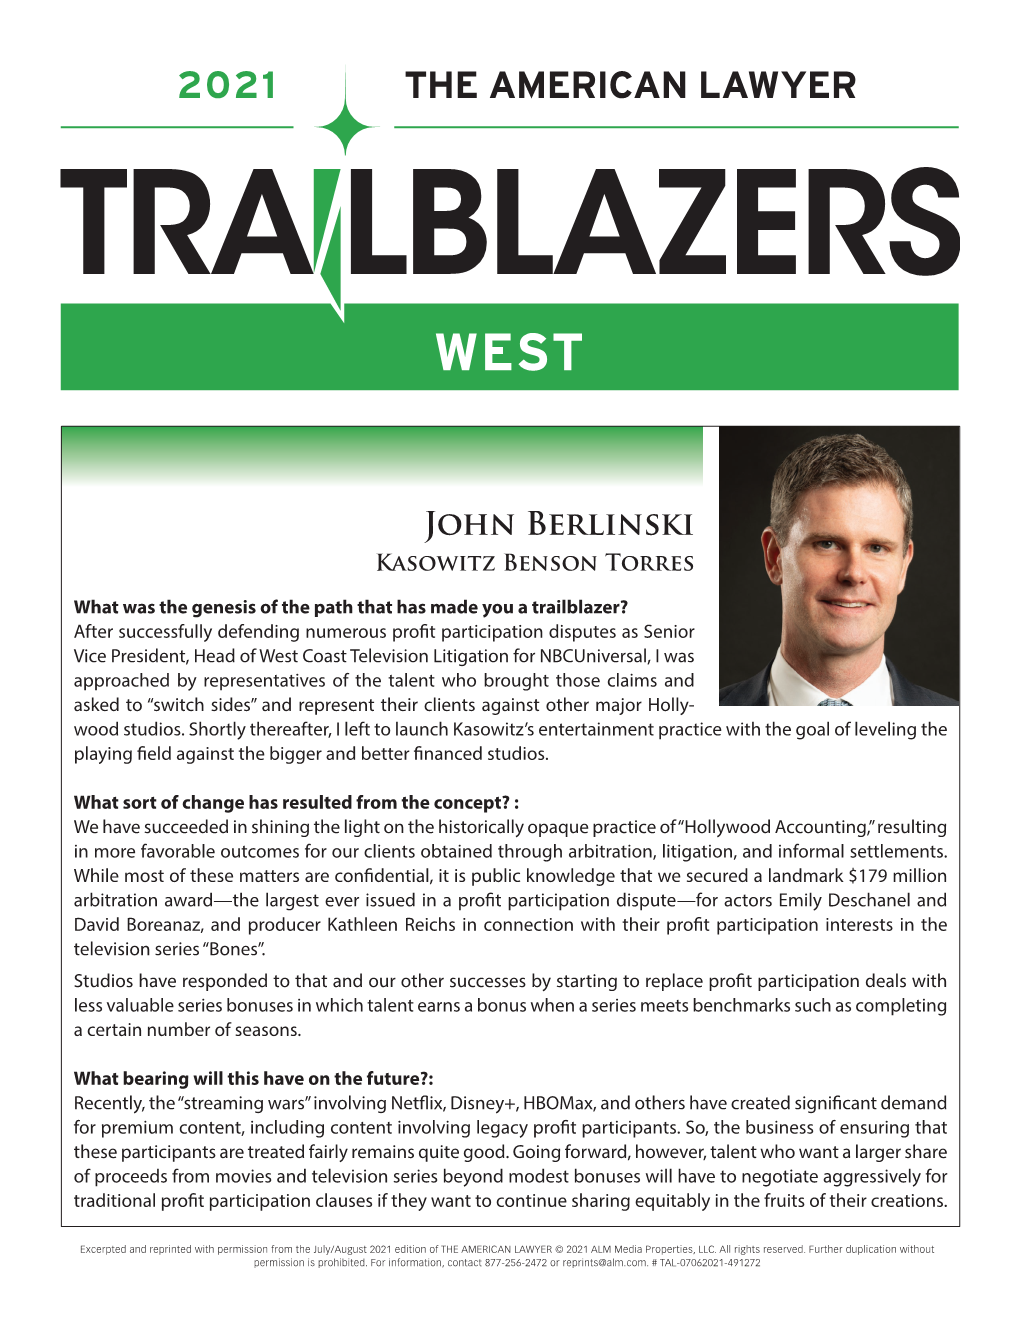 Read John Berlinski's American Lawyer Trailblazer Profile